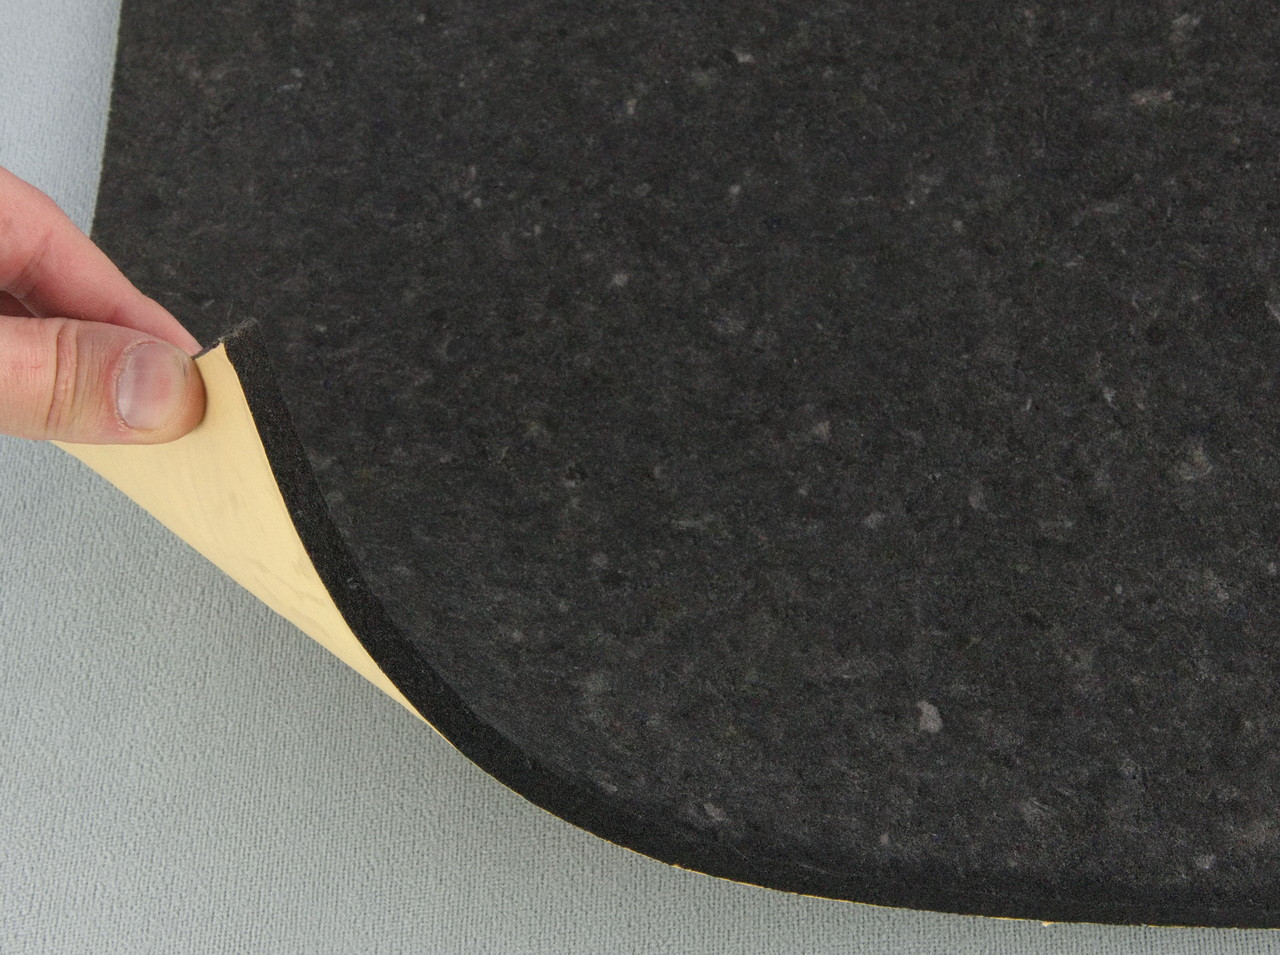 Шумоизоляционный материал Acoustics Faton Black, черный, толщина 8мм, лист 80х50смм детальная фотка